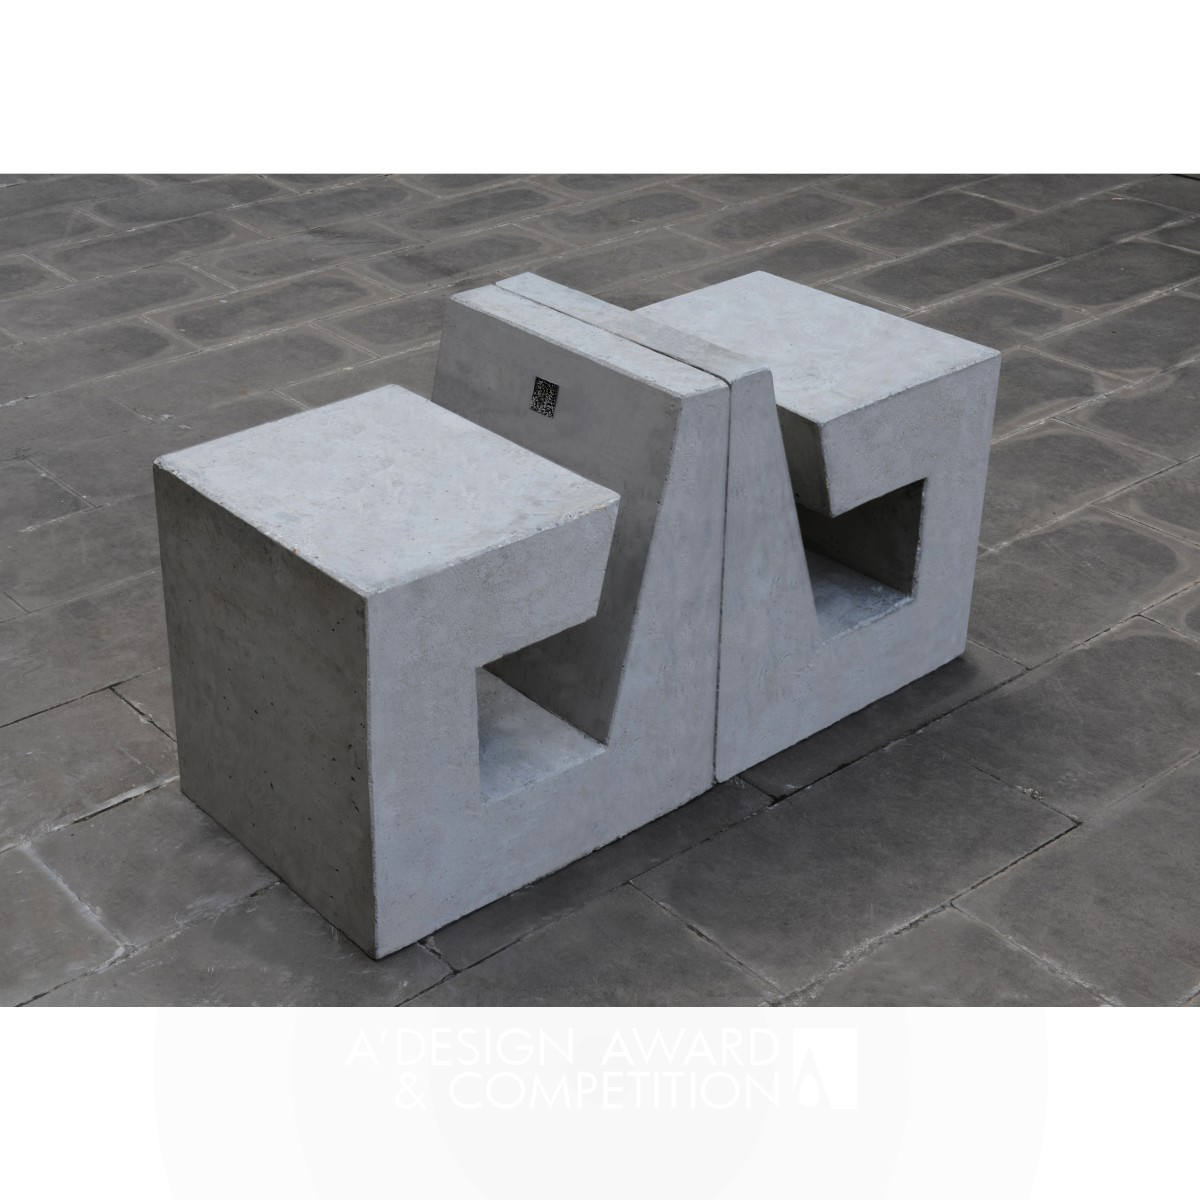 B-Shape Concrete Public Seating by Qiu Liwei